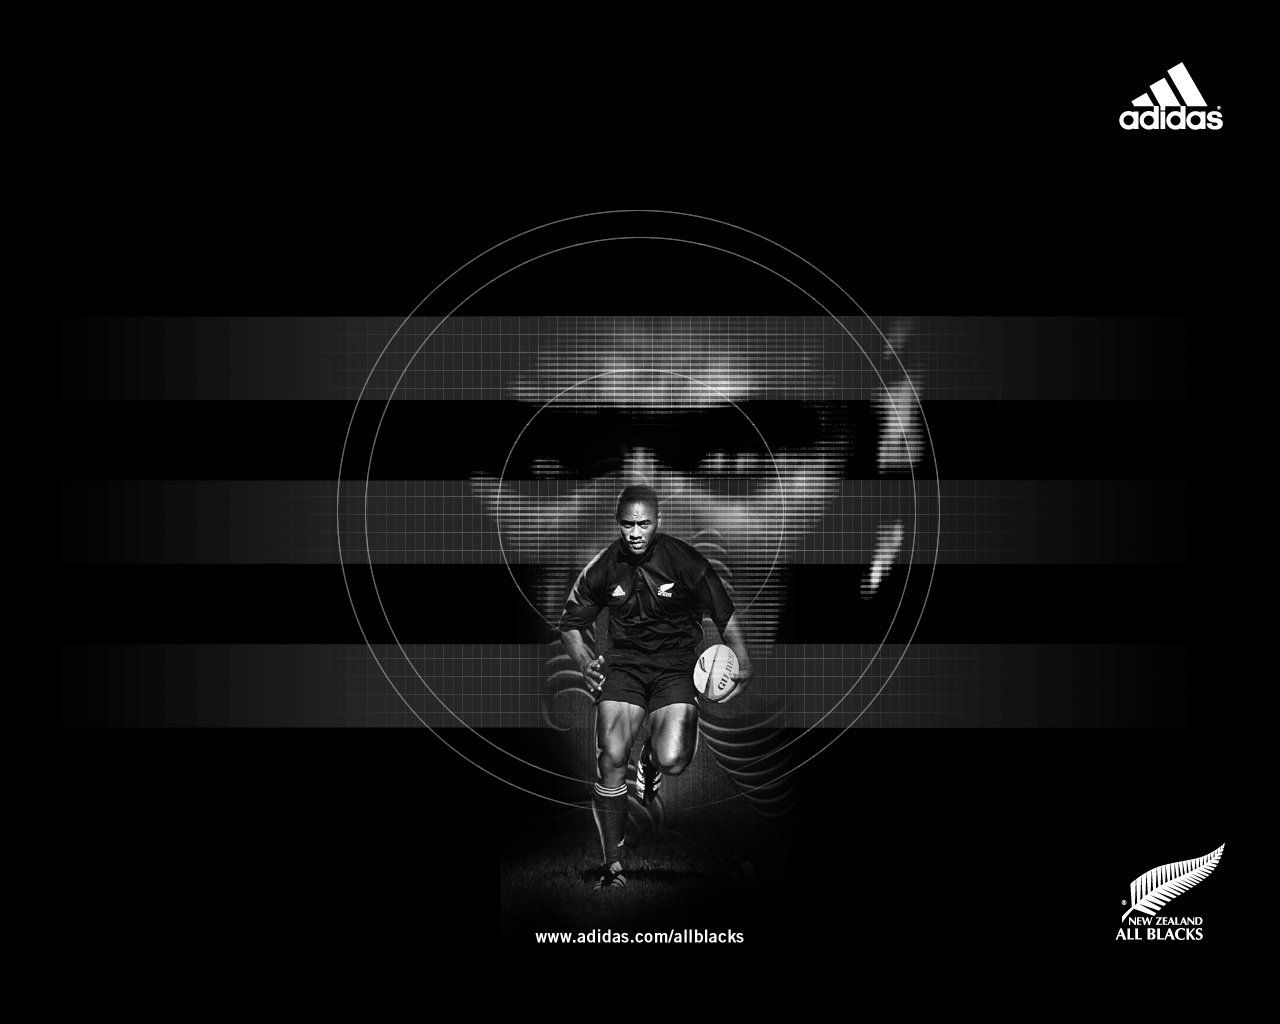 alle schwarzen rugby tapeten,schwarz,fotografieren,dunkelheit,schwarz und weiß,text